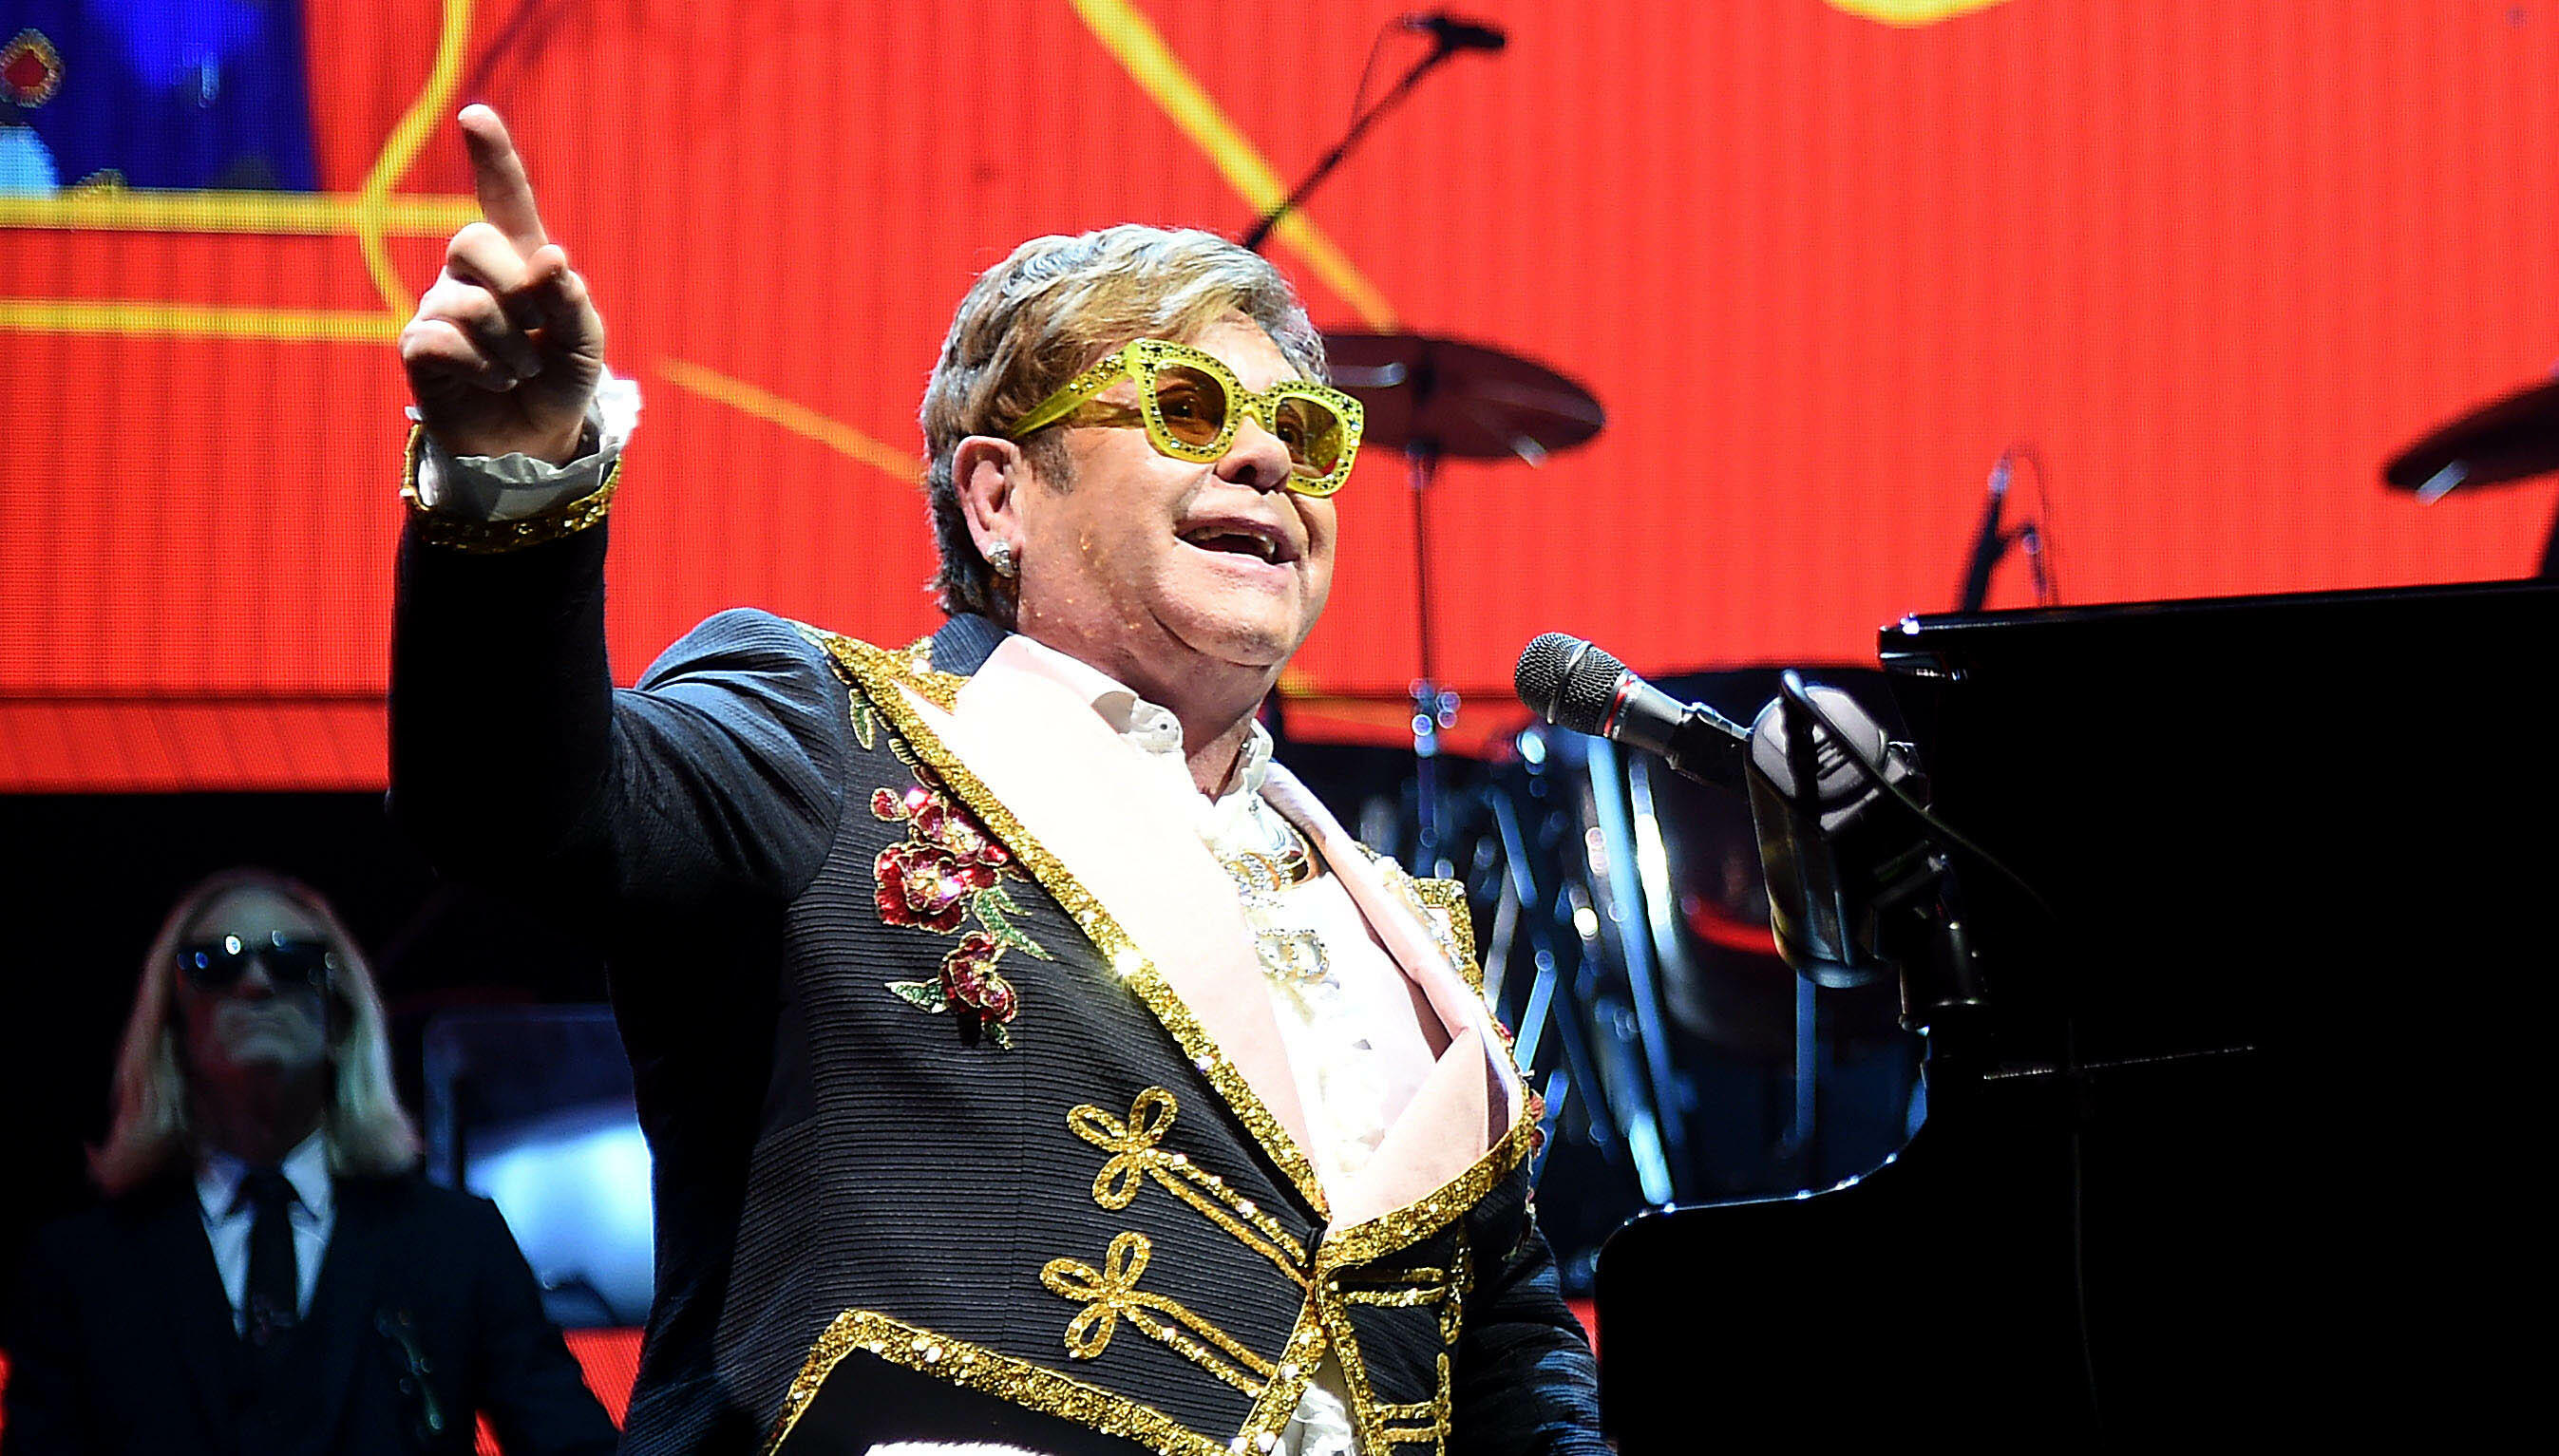 Elton John Announces Biography To Tell 